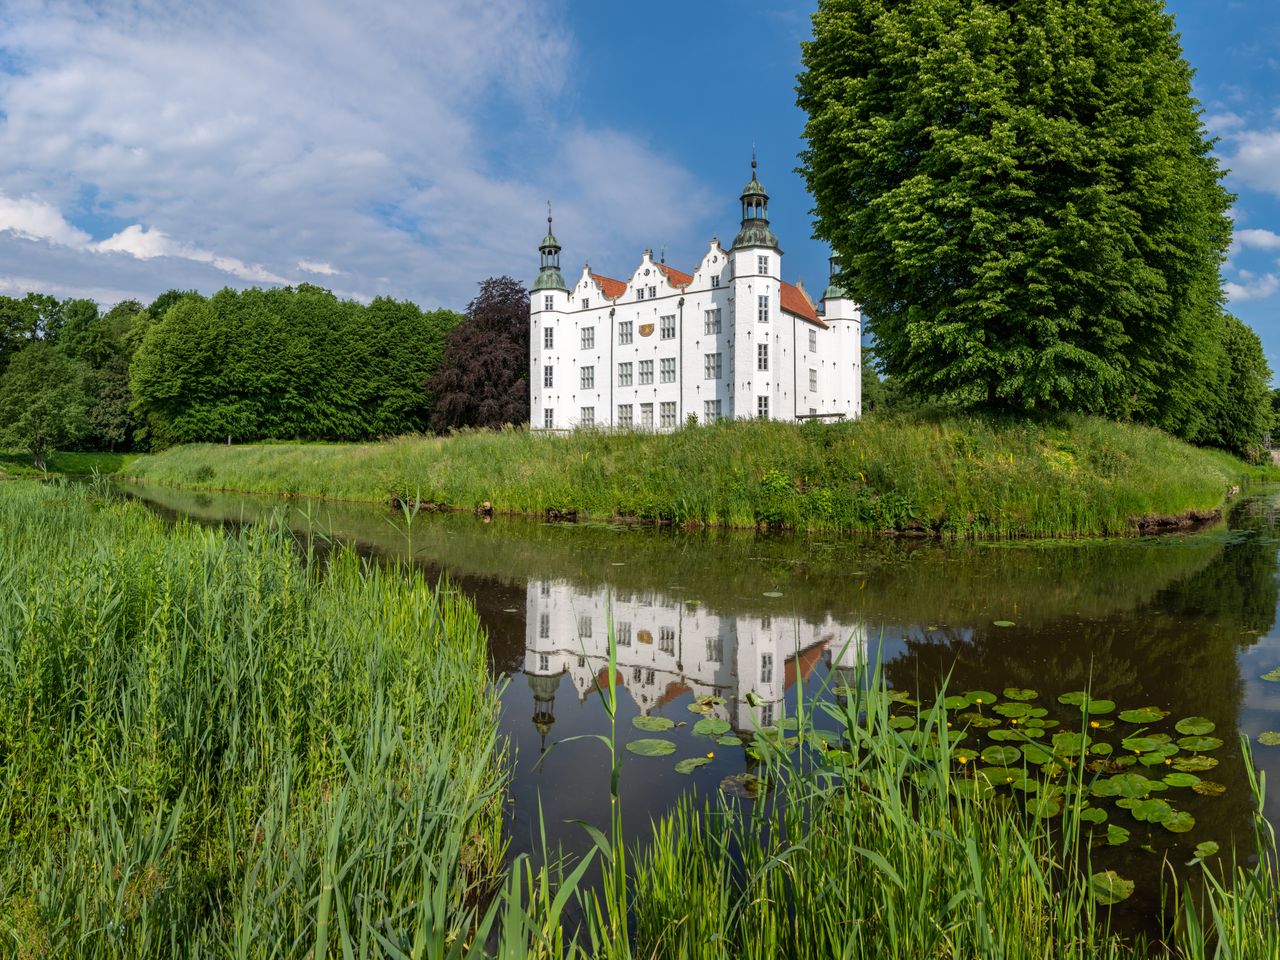 Urlaub zwischen Hamburg & Lübeck im Hotel am Schloss